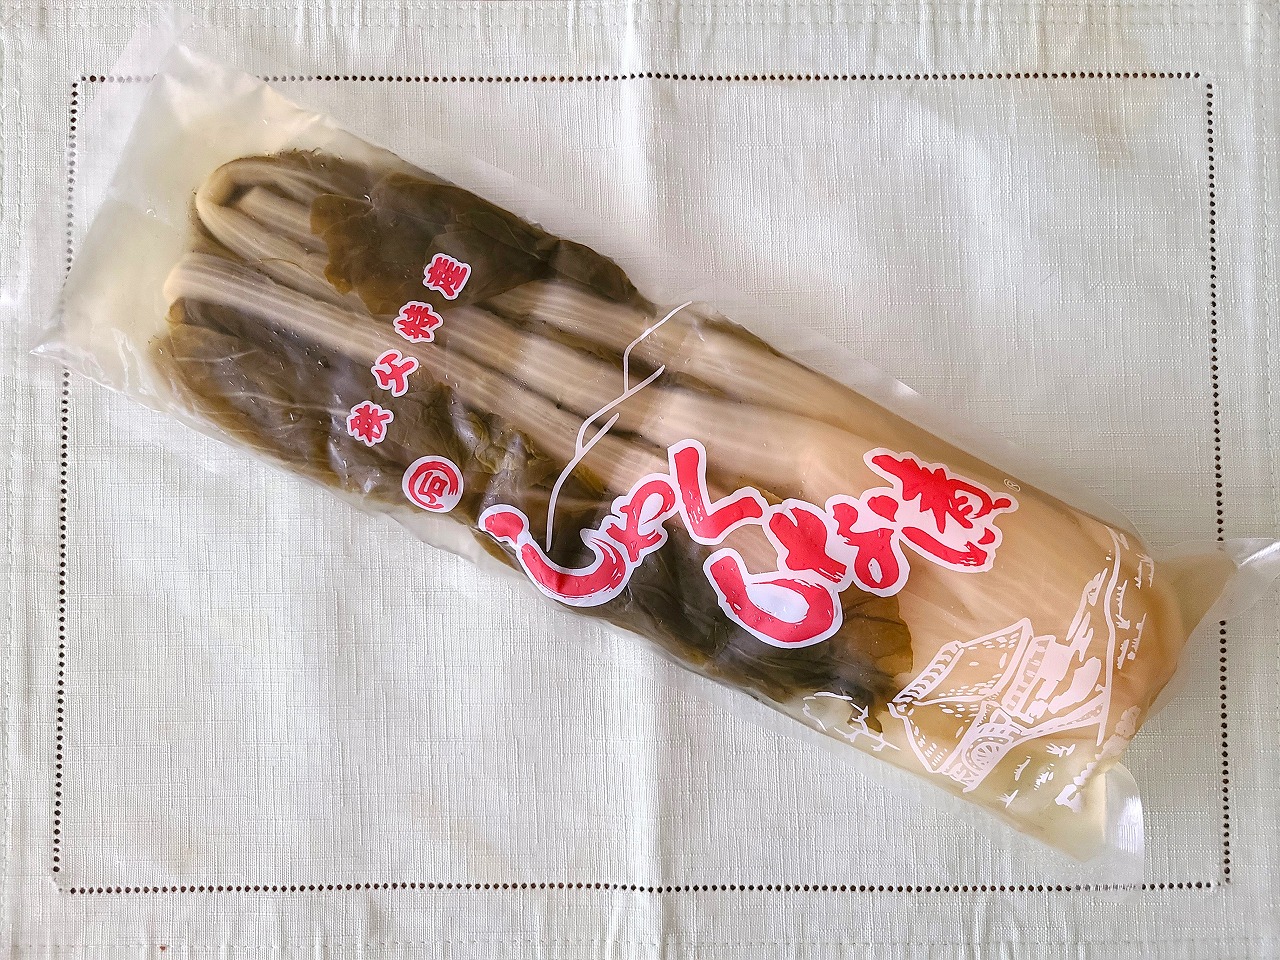 埼玉県小鹿野町「しゃくしな漬」。秩父地方の伝統野菜の漬物です | NPO スローライフ・ジャパン